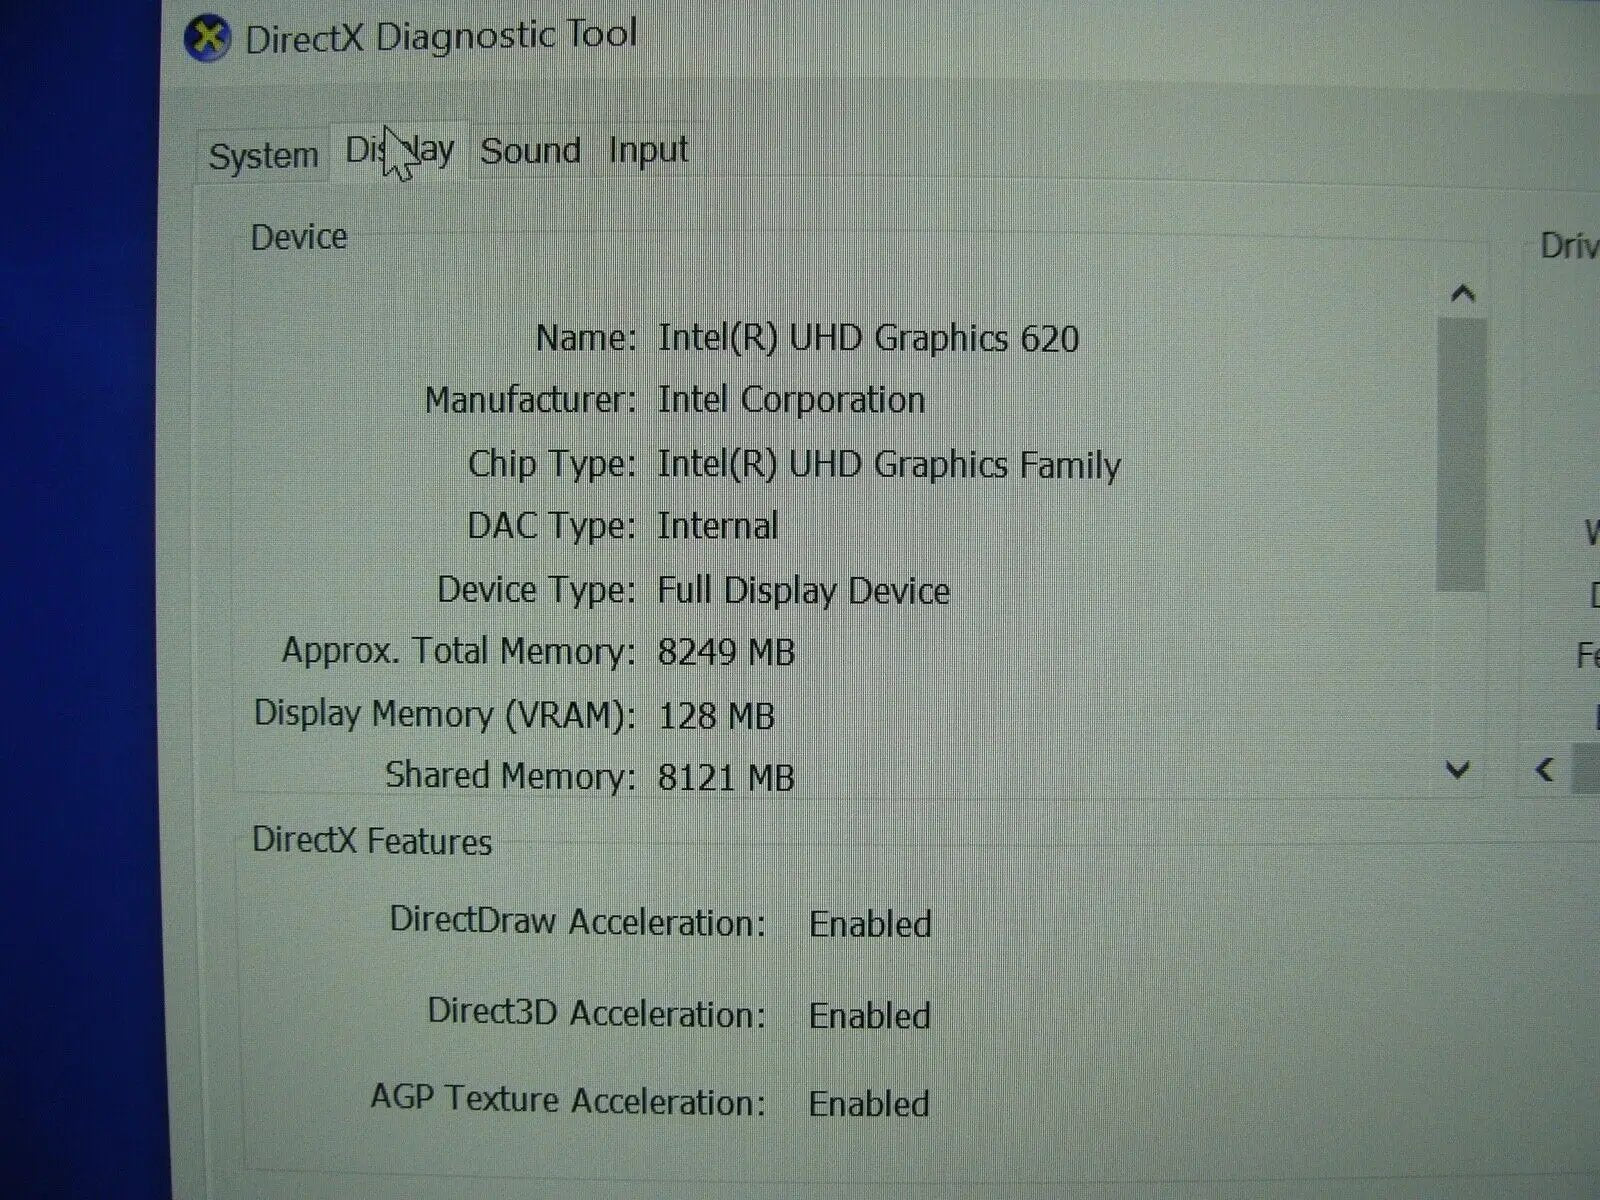 OB 1 YR WRTY A+ FHD Dell Latitude 5424 Rugged VPro i5-8350U 3.6GH 16GB 256GB SSD